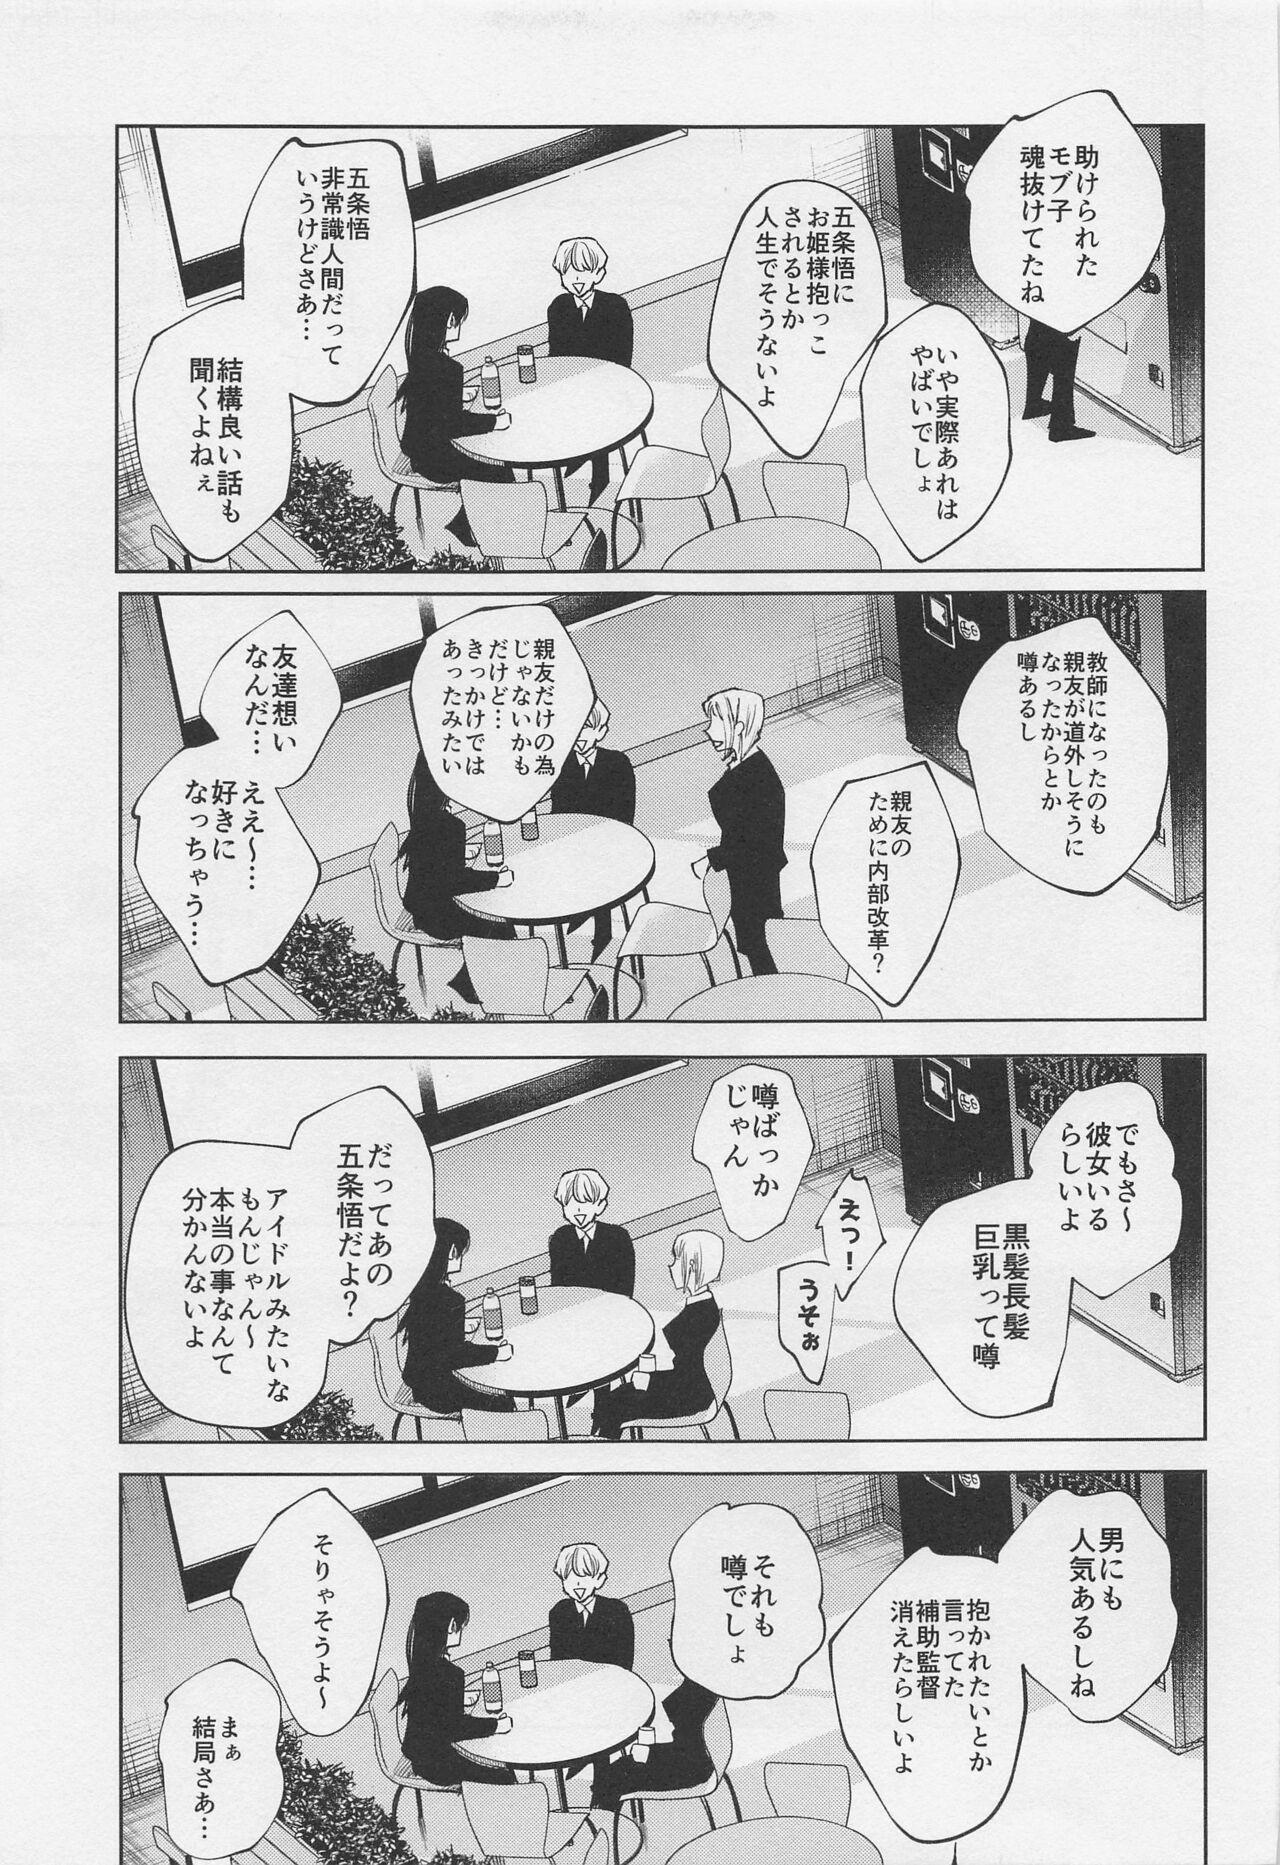 Passivo SHISHIRUIRUI - Jujutsu kaisen Salope - Page 6